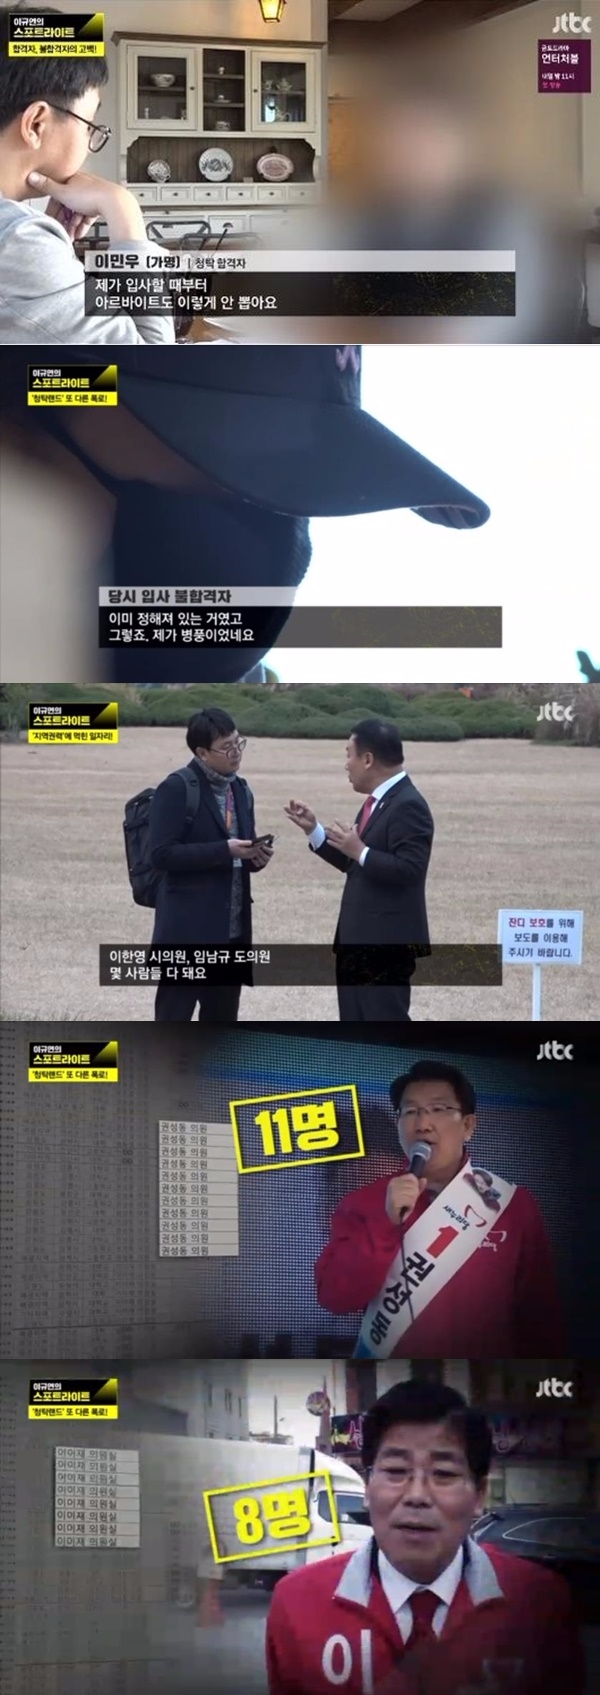 23일 방송된 JTBC '이규연의 스포트라이트'에서는 강원랜드 청탁 의혹에 대해 파헤쳤다. 출처=JTBC